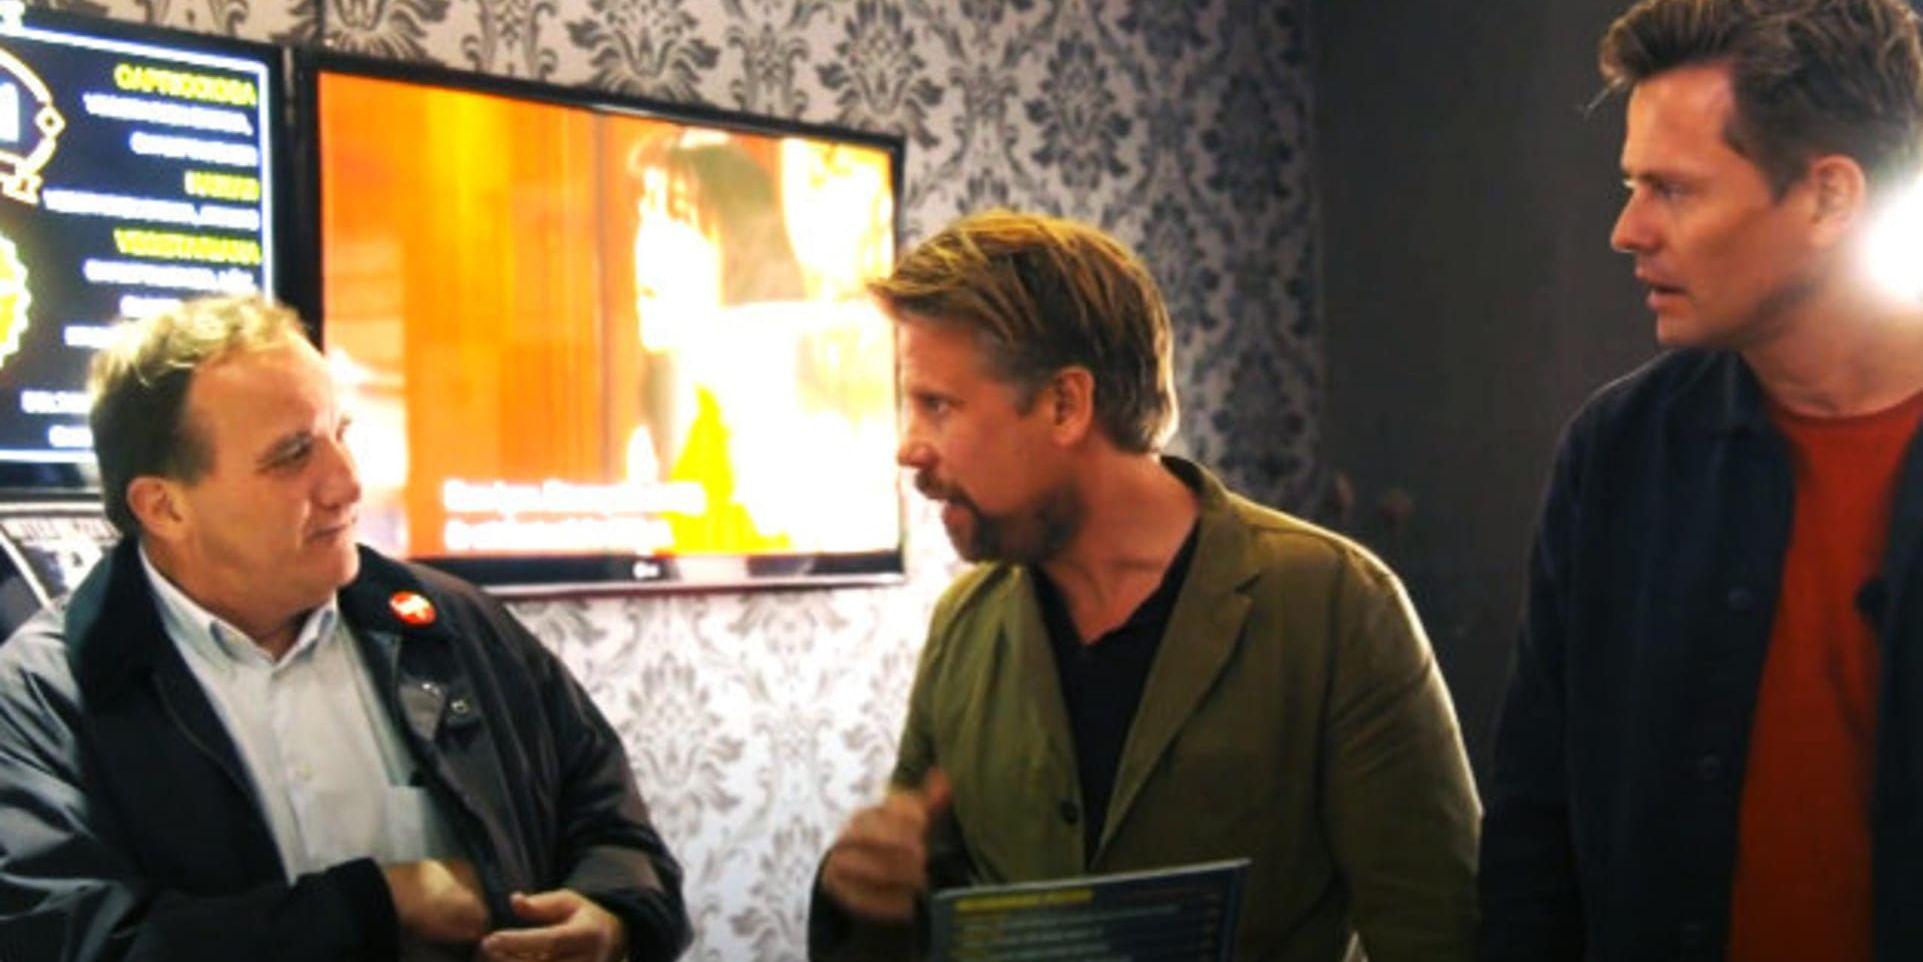 Filip och Fredrik möter Löfven i "De sista skälvande minuterna". Pressbild.